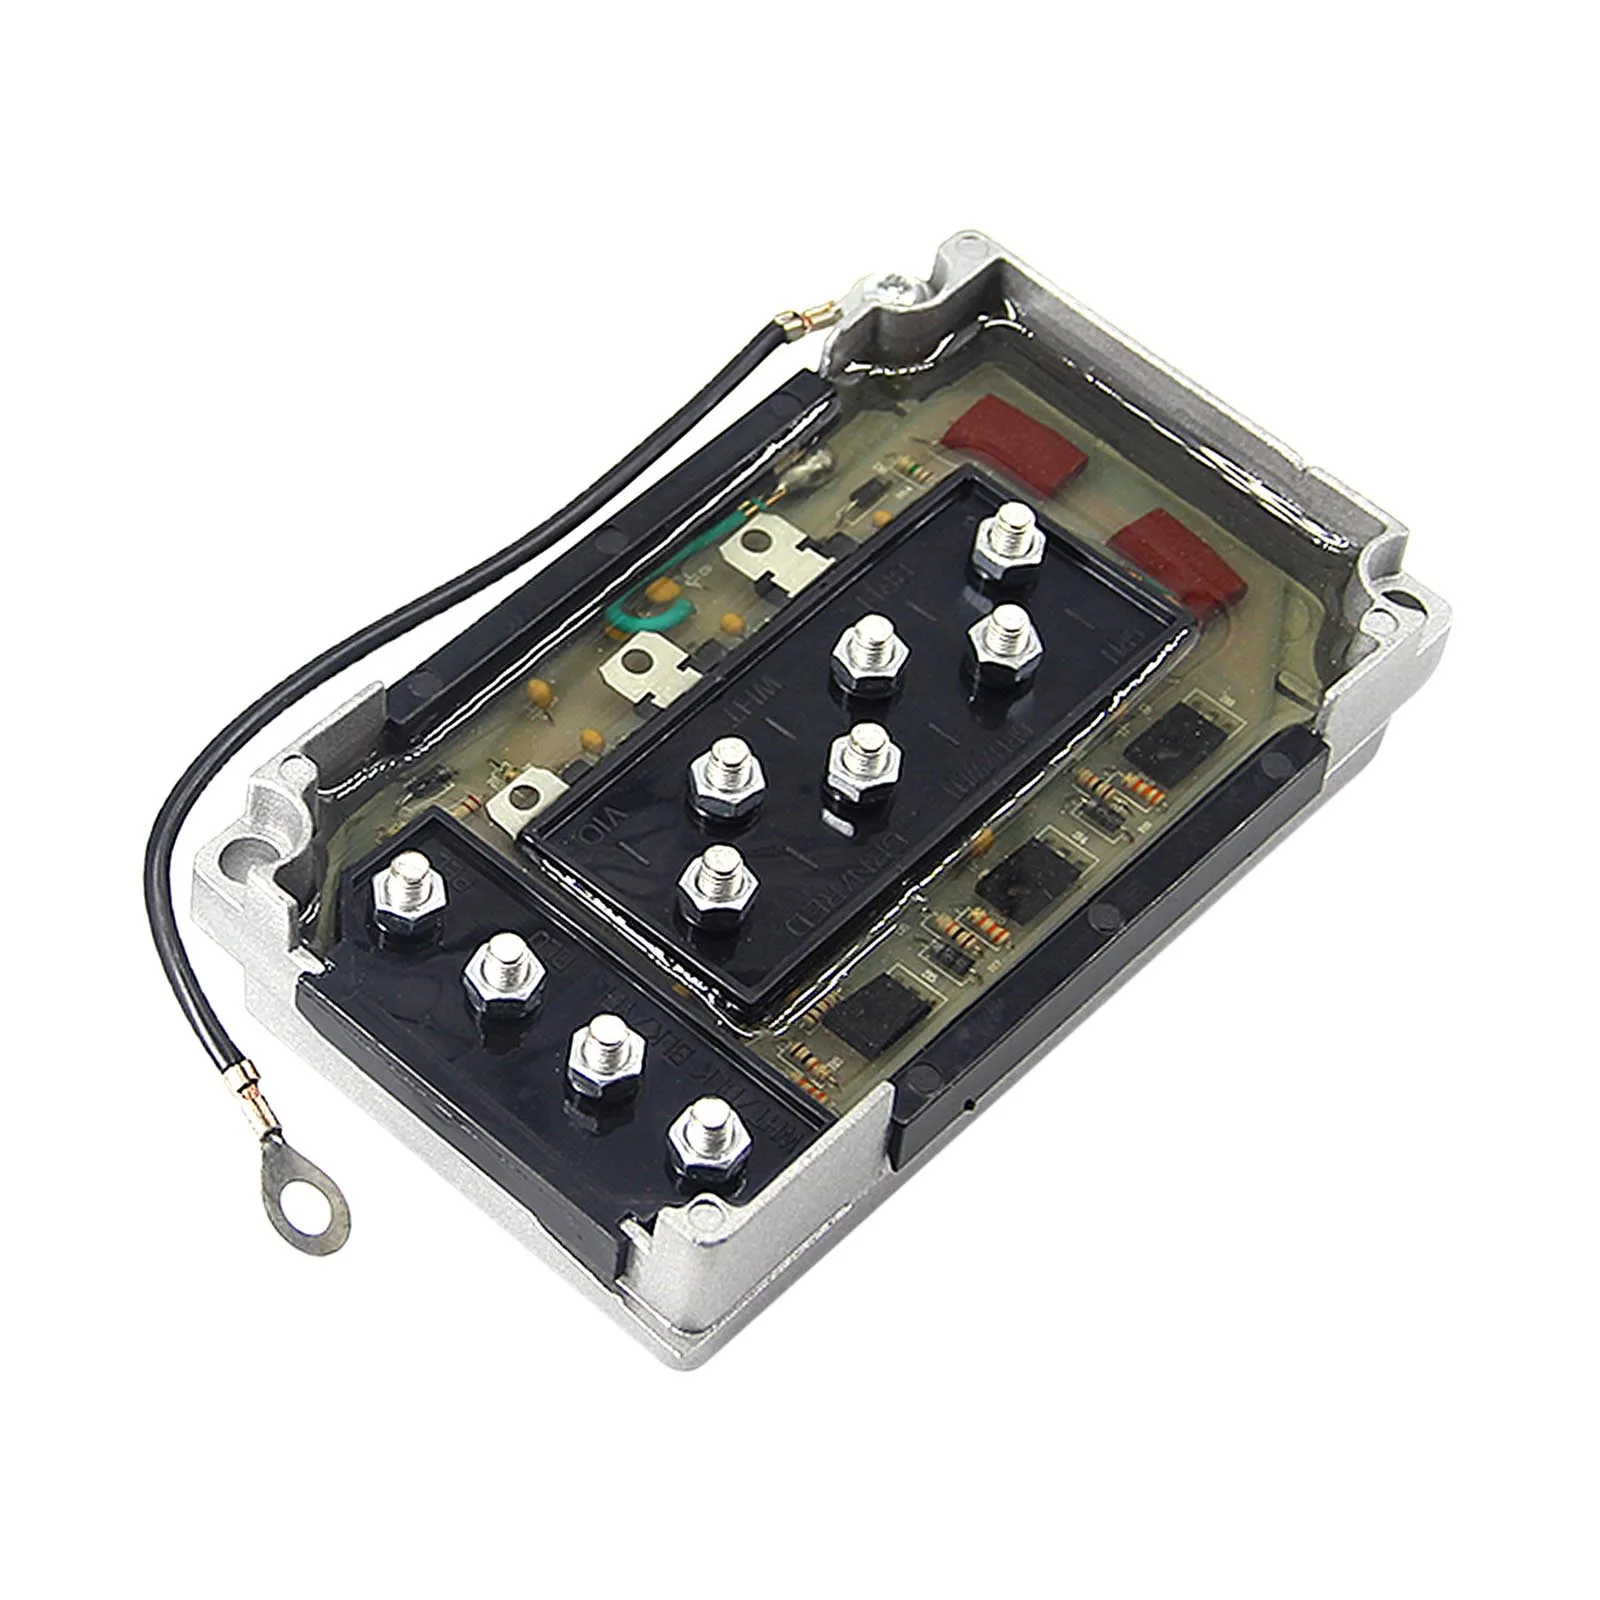 Caja de interruptores CDI para Motor fueraborda Mercury 50-275 HP, paquete de...